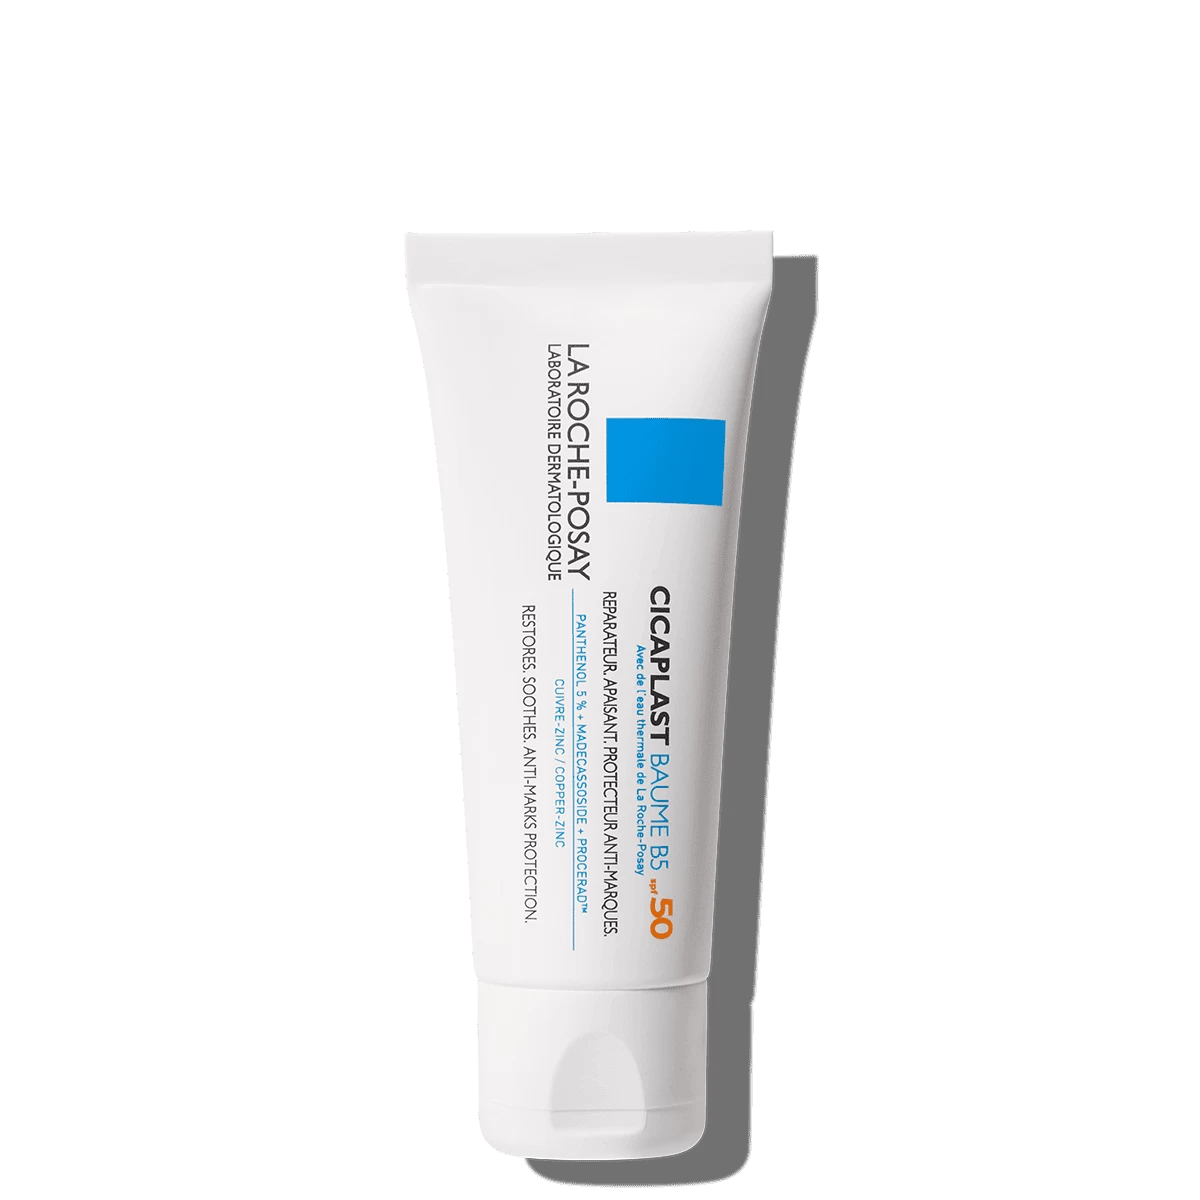 La Roche-Posay cicaplast balzam UV 40 ml   za oštećenu kožu i površinske iritacije